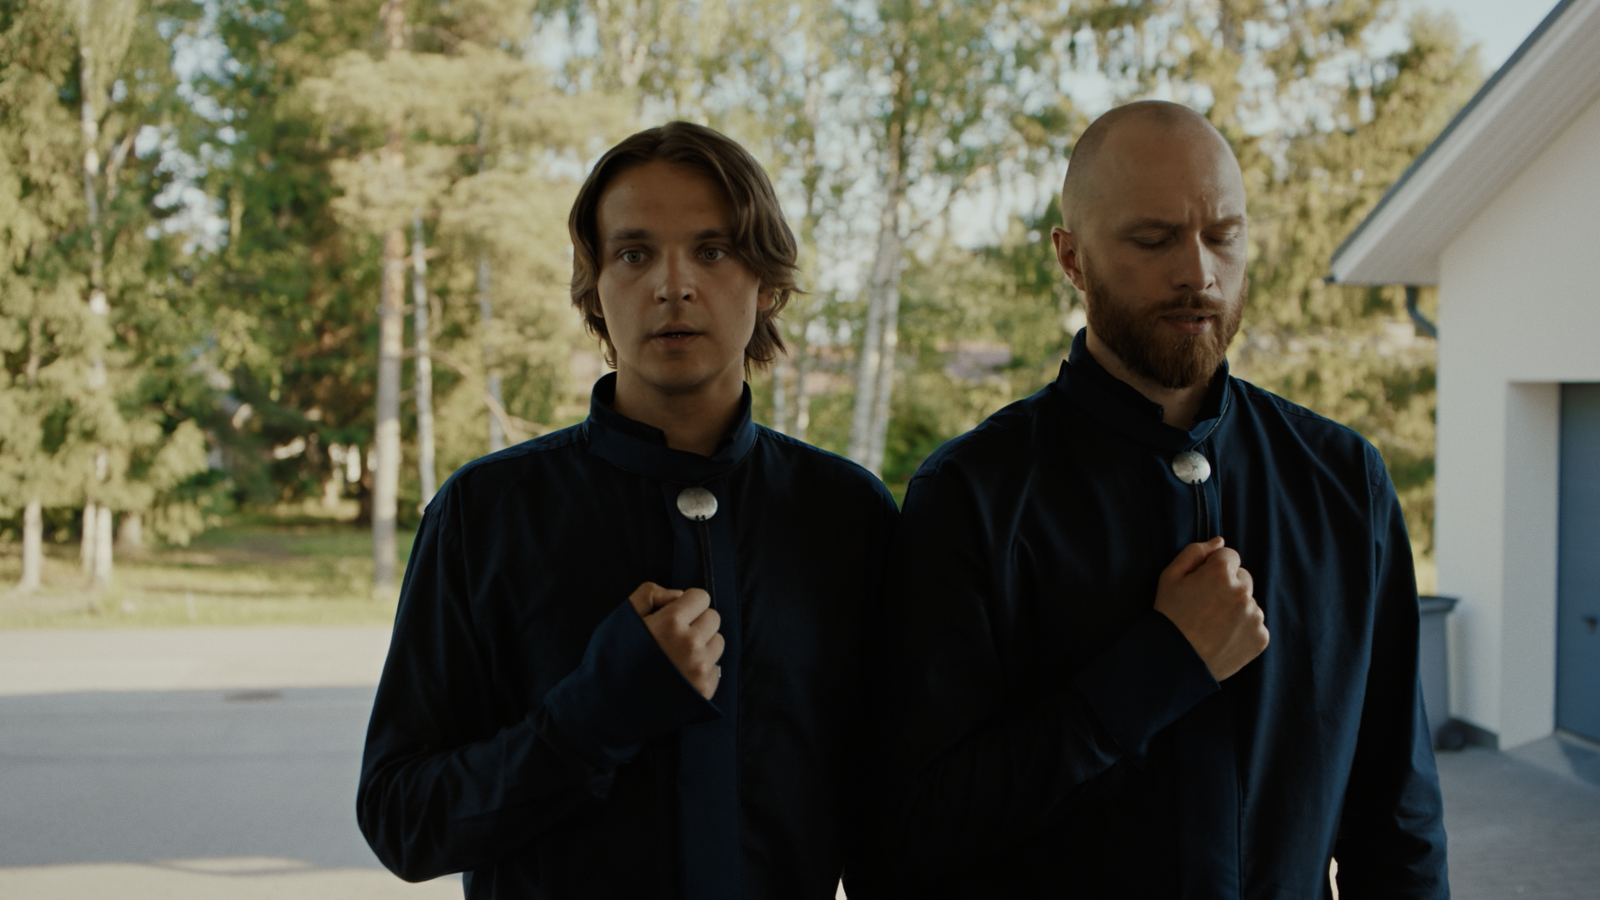 Kuvassa ovat Roope Salminen ja Eino Heiskanen seisomassa pihalla, jonka taustalla näkyy vihreitä lehtipuita. 